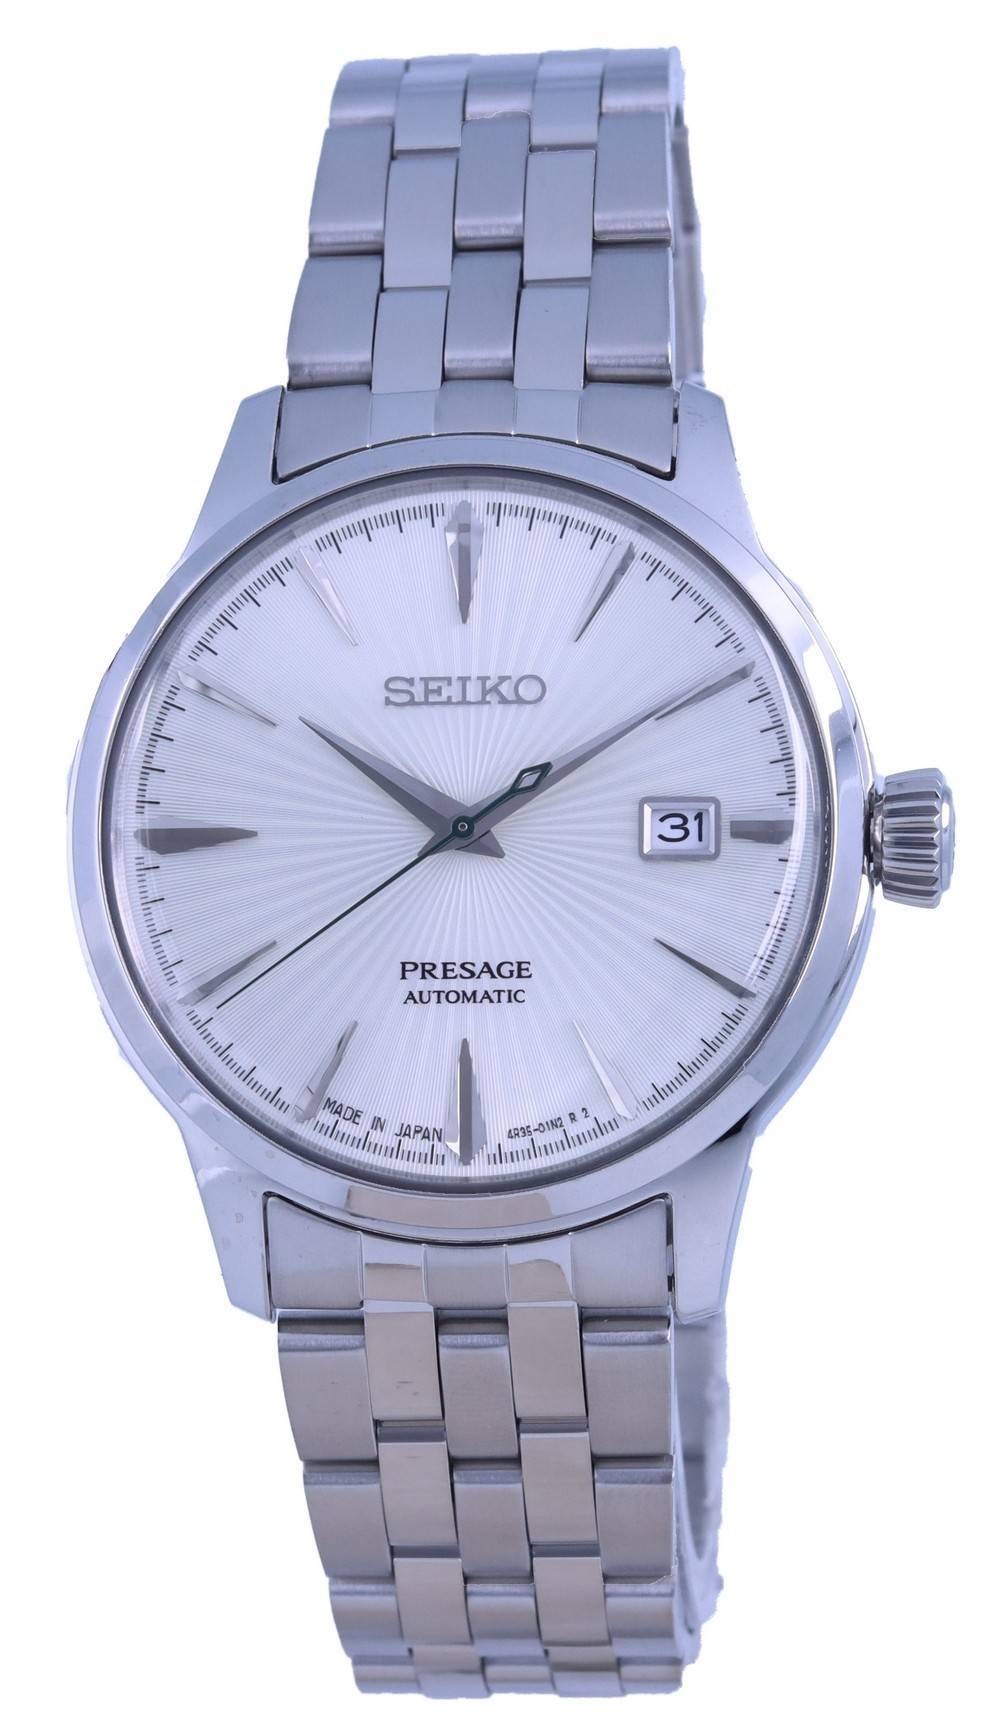 Đồng hồ Seiko Presage đang giảm giá | Miễn phí vận chuyển toàn cầu